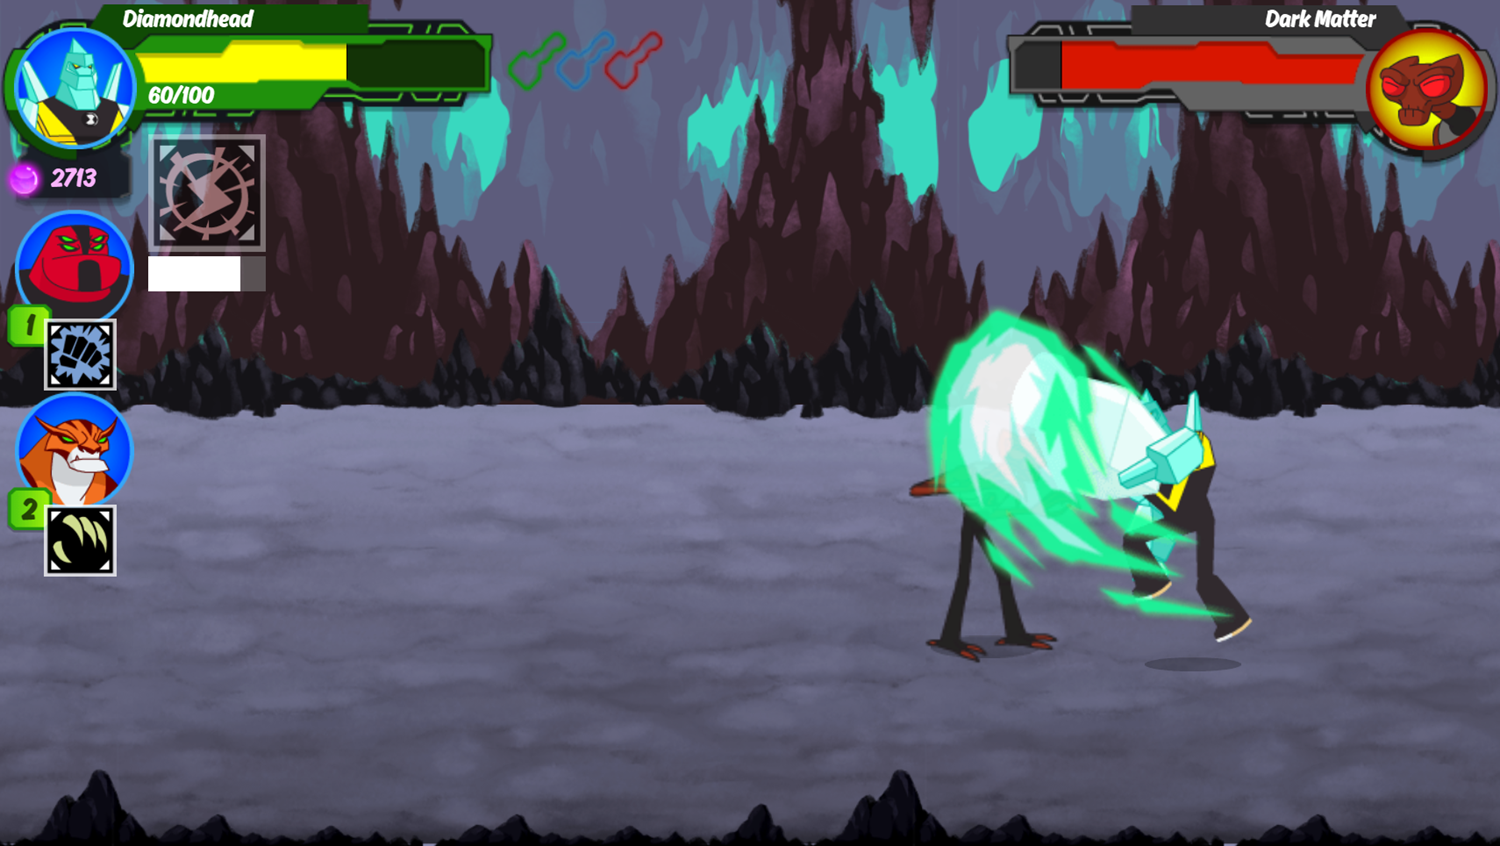 Ben 10 Omnitrix Shadow Game Boss Fight Screenshot.